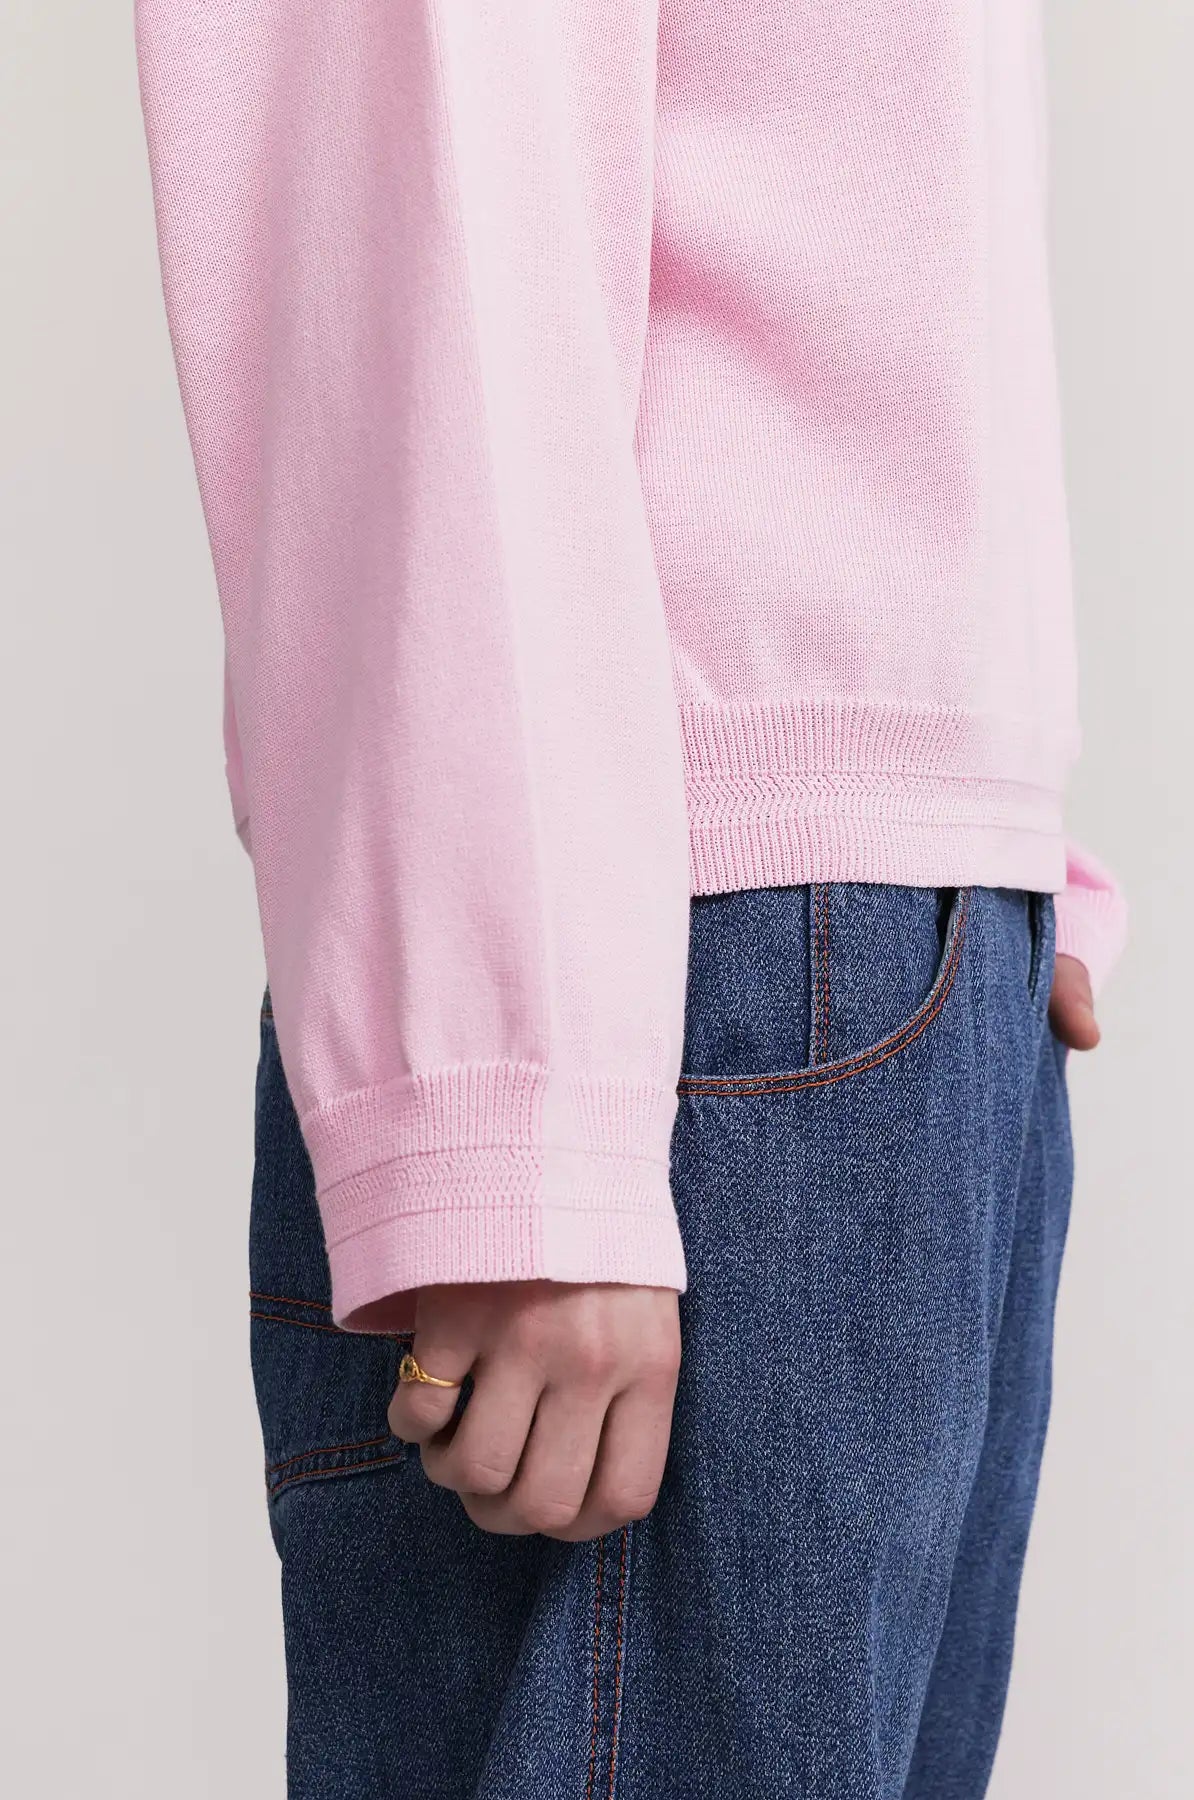 Produit maille Loucine couleur rose tricoté par la marque Parisienne Tricots Jean Marc 1972.